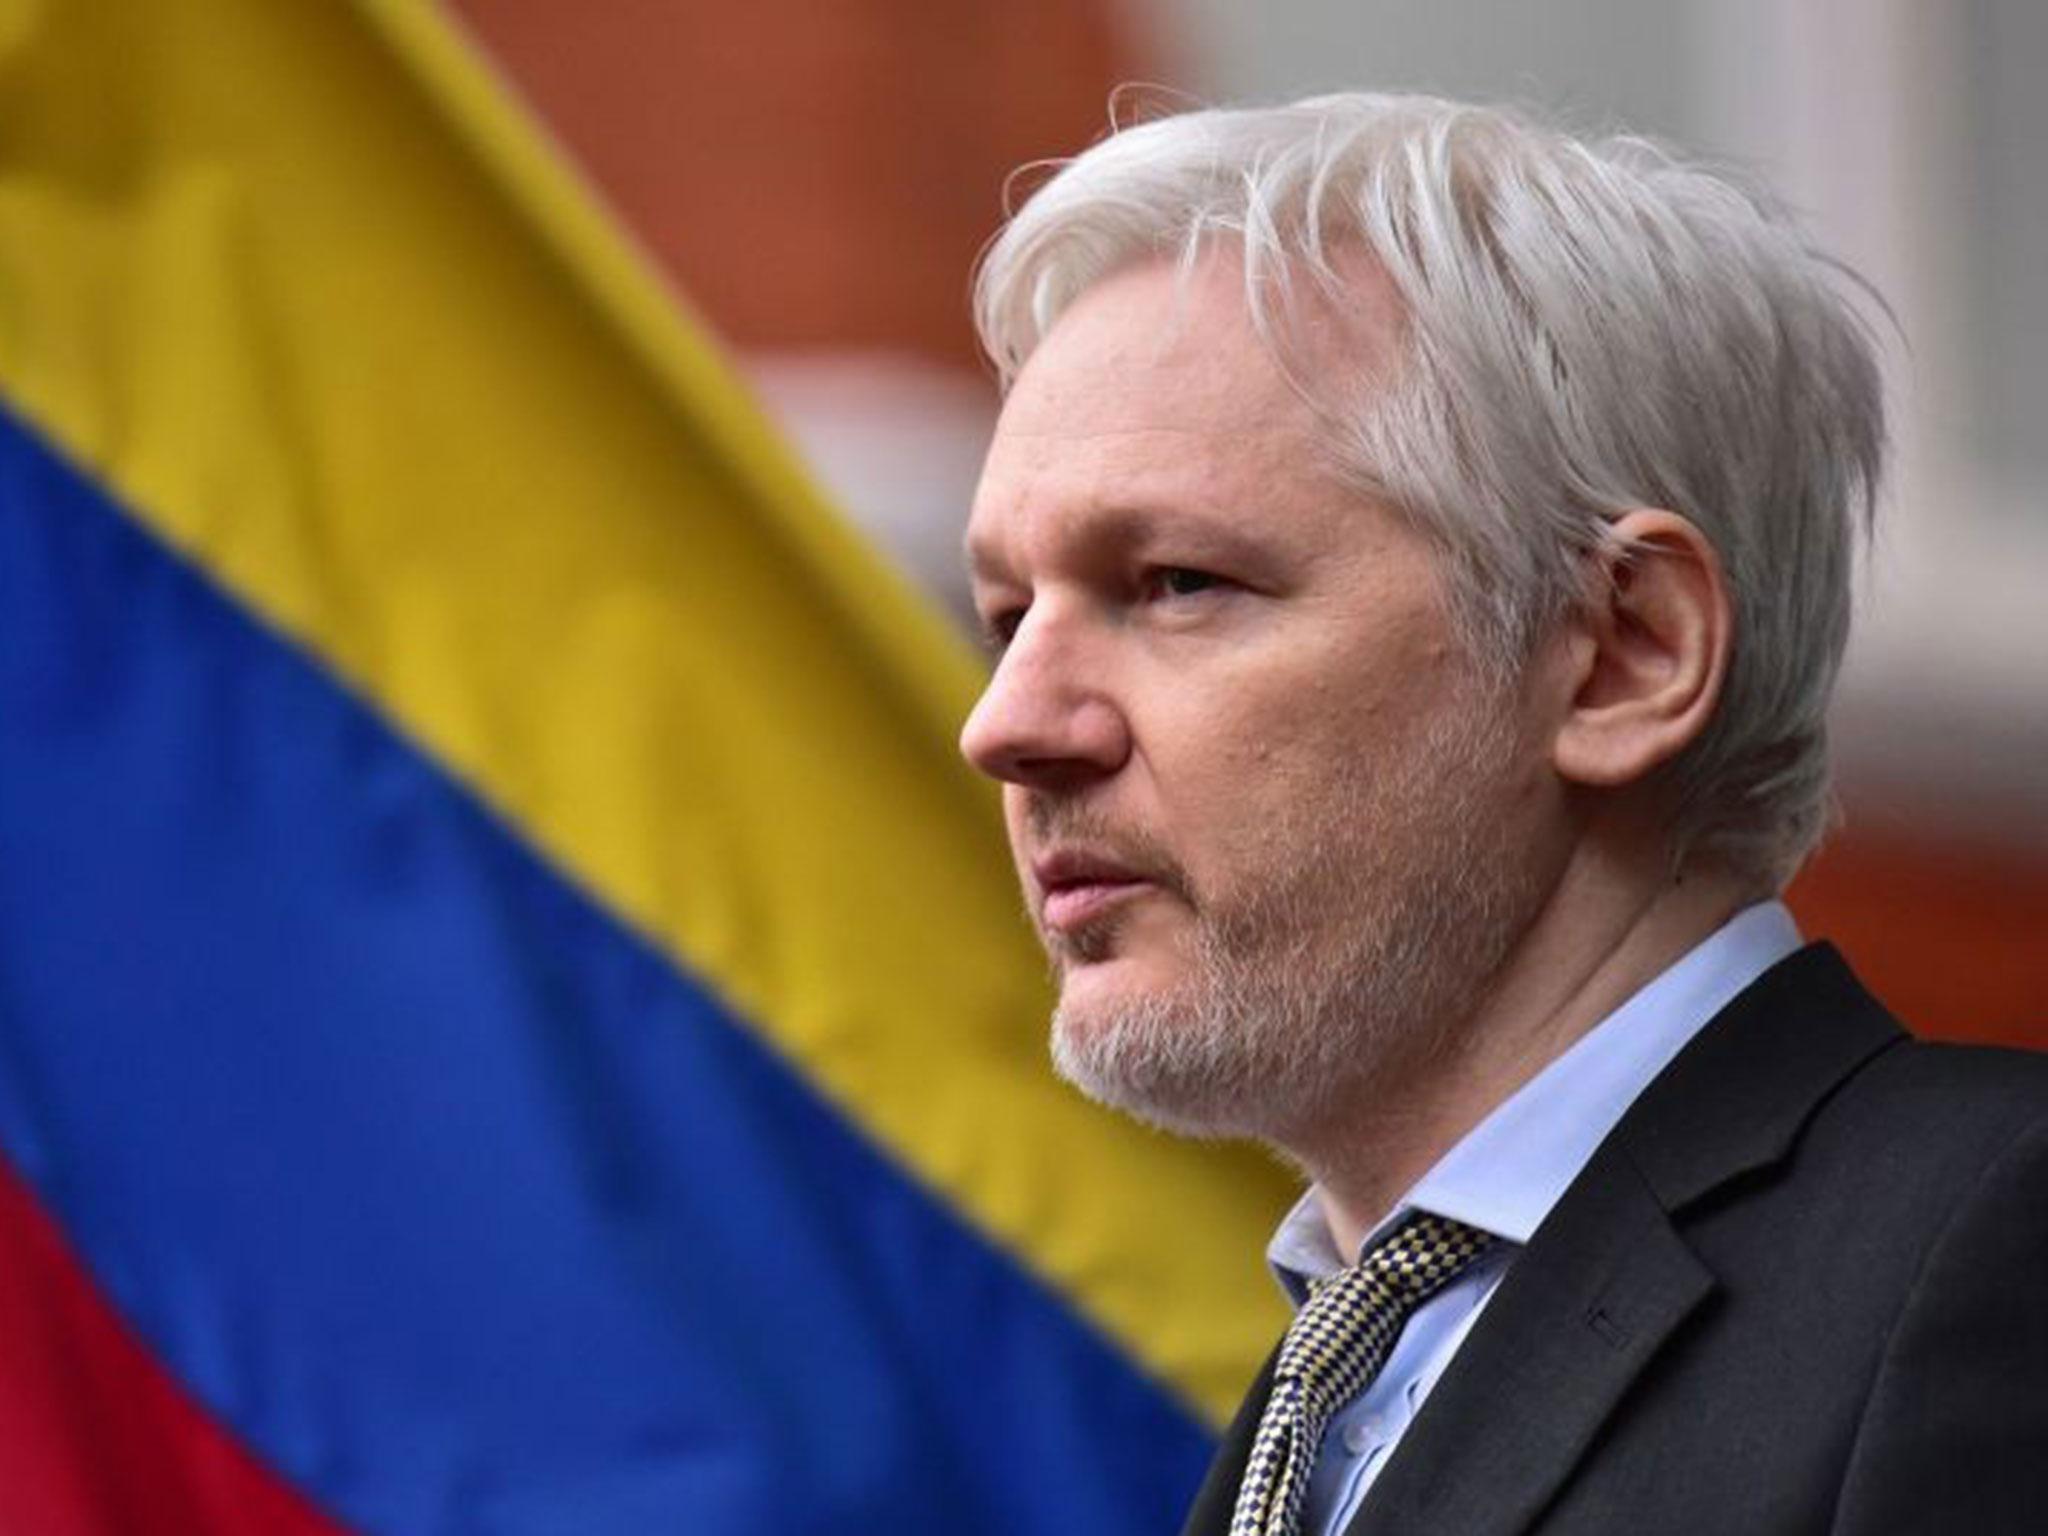 Republikein suggereert gratie Assange in ruil voor informatie DNC-lek